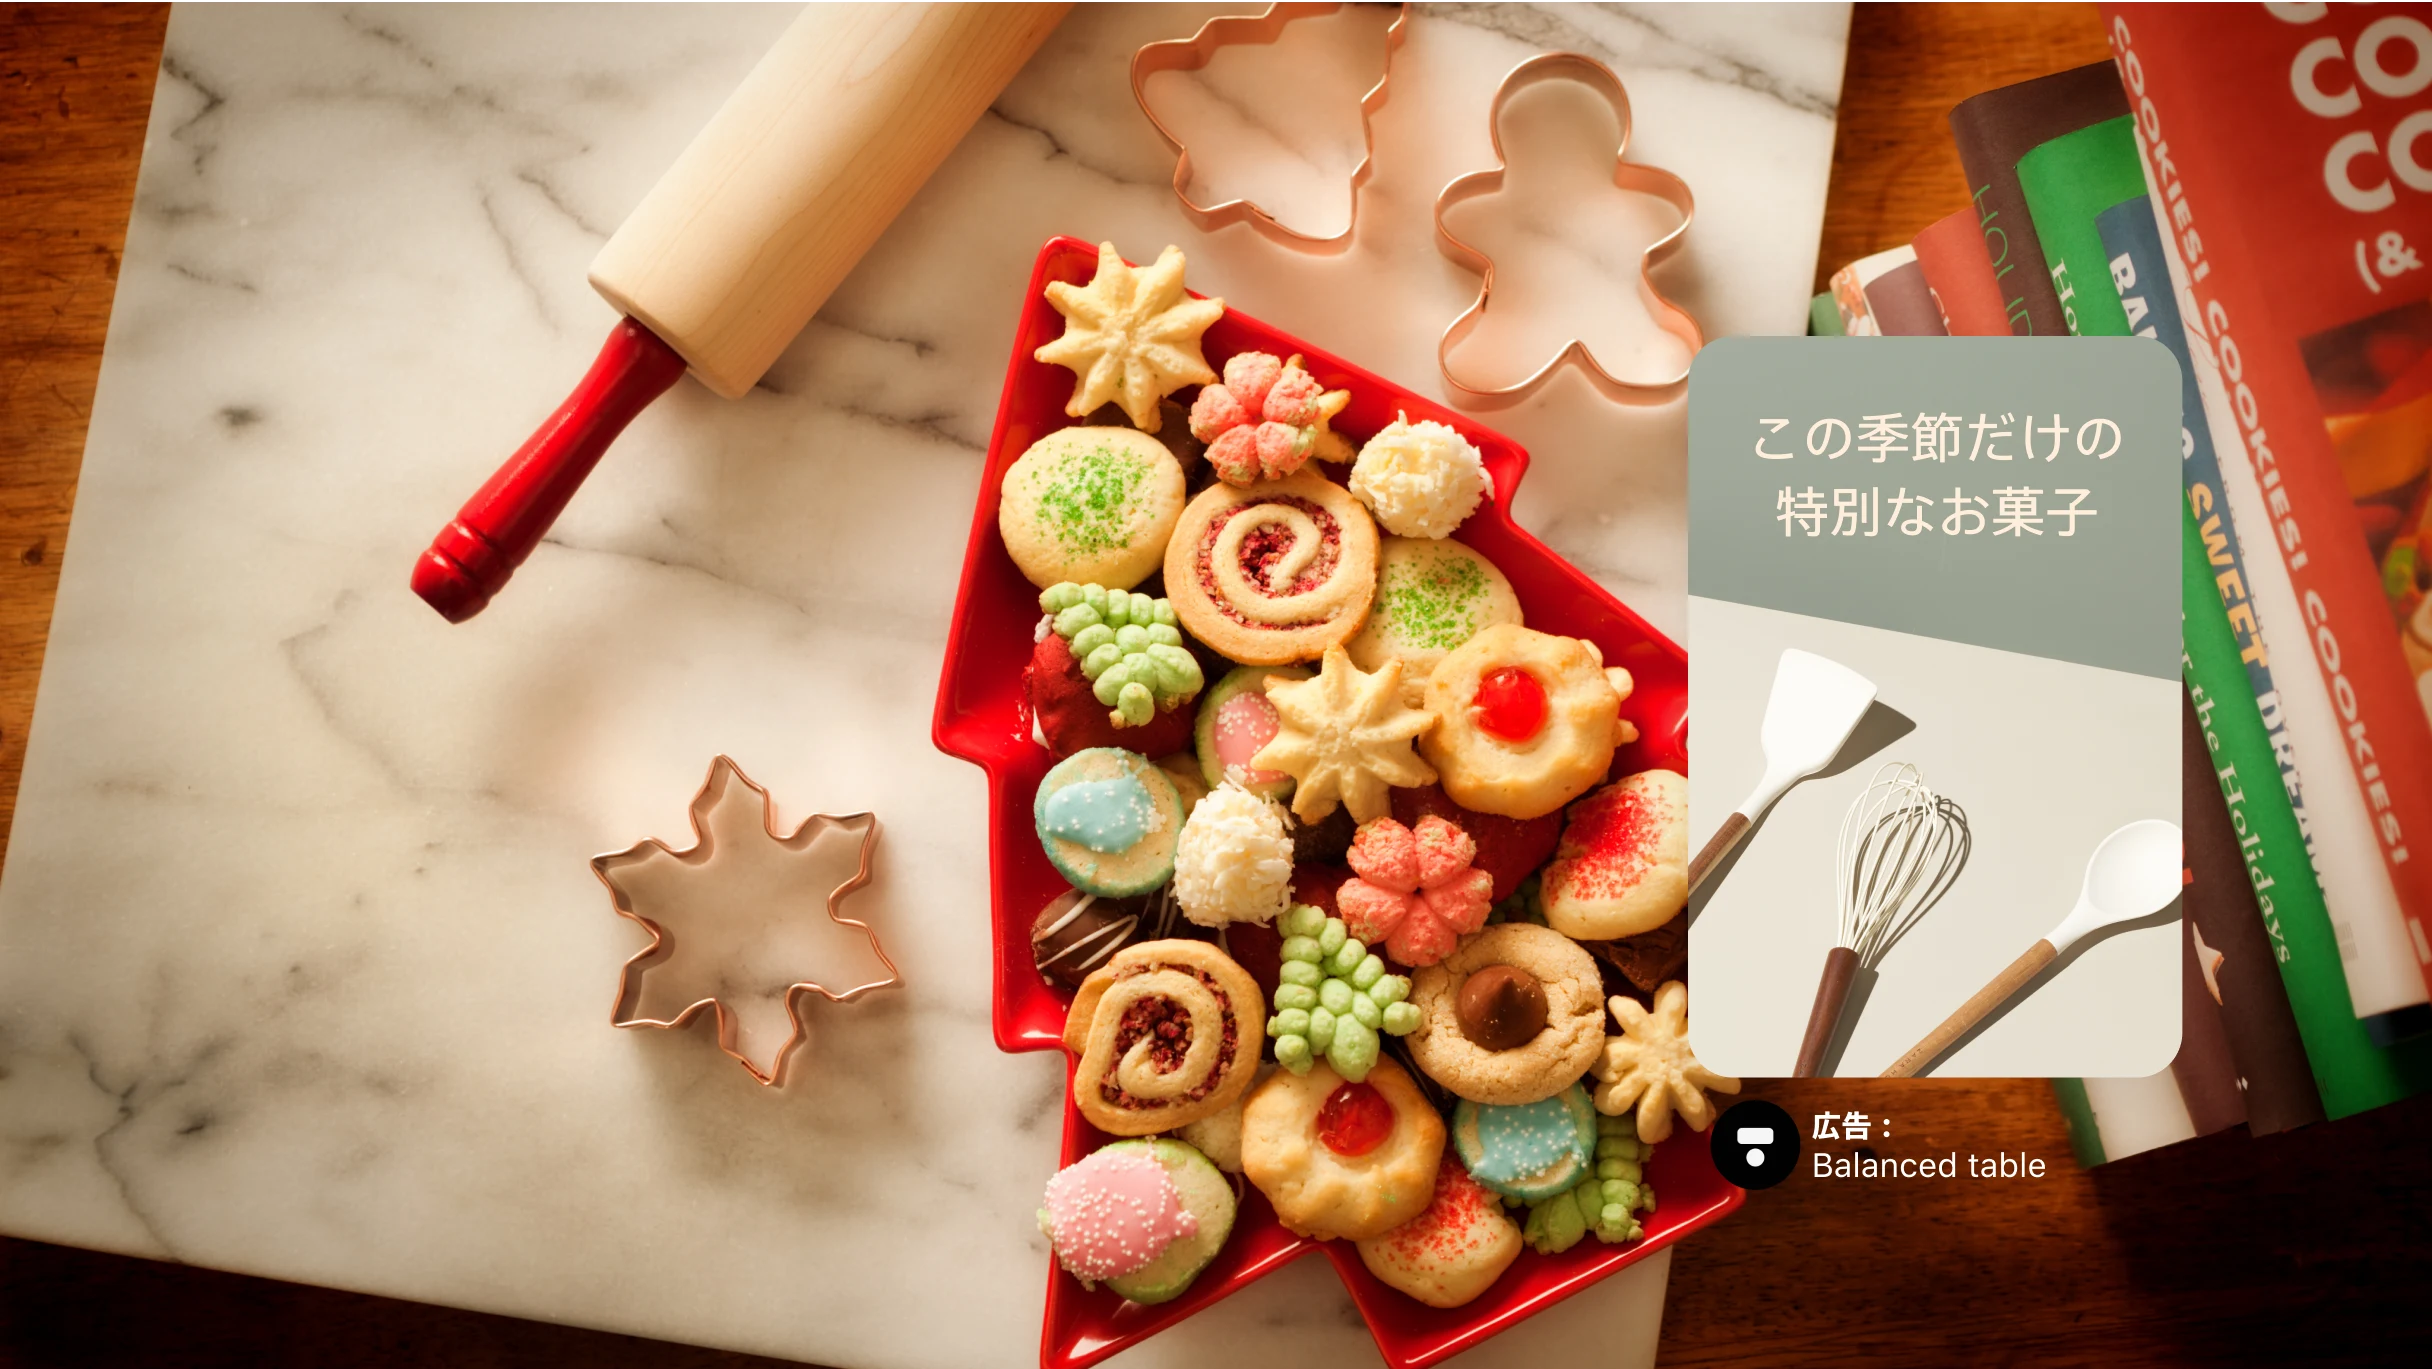 雪の結晶やツリーの形をしたクリスマスクッキーが入ったツリー型のトレイをメインにしたフル画面の画像、周りにはクッキー型とめん棒、右側にはお菓子作り用の本が積み重なっている。その上には「この季節だけの特別なお菓子」のテキストが入った広告ピン。